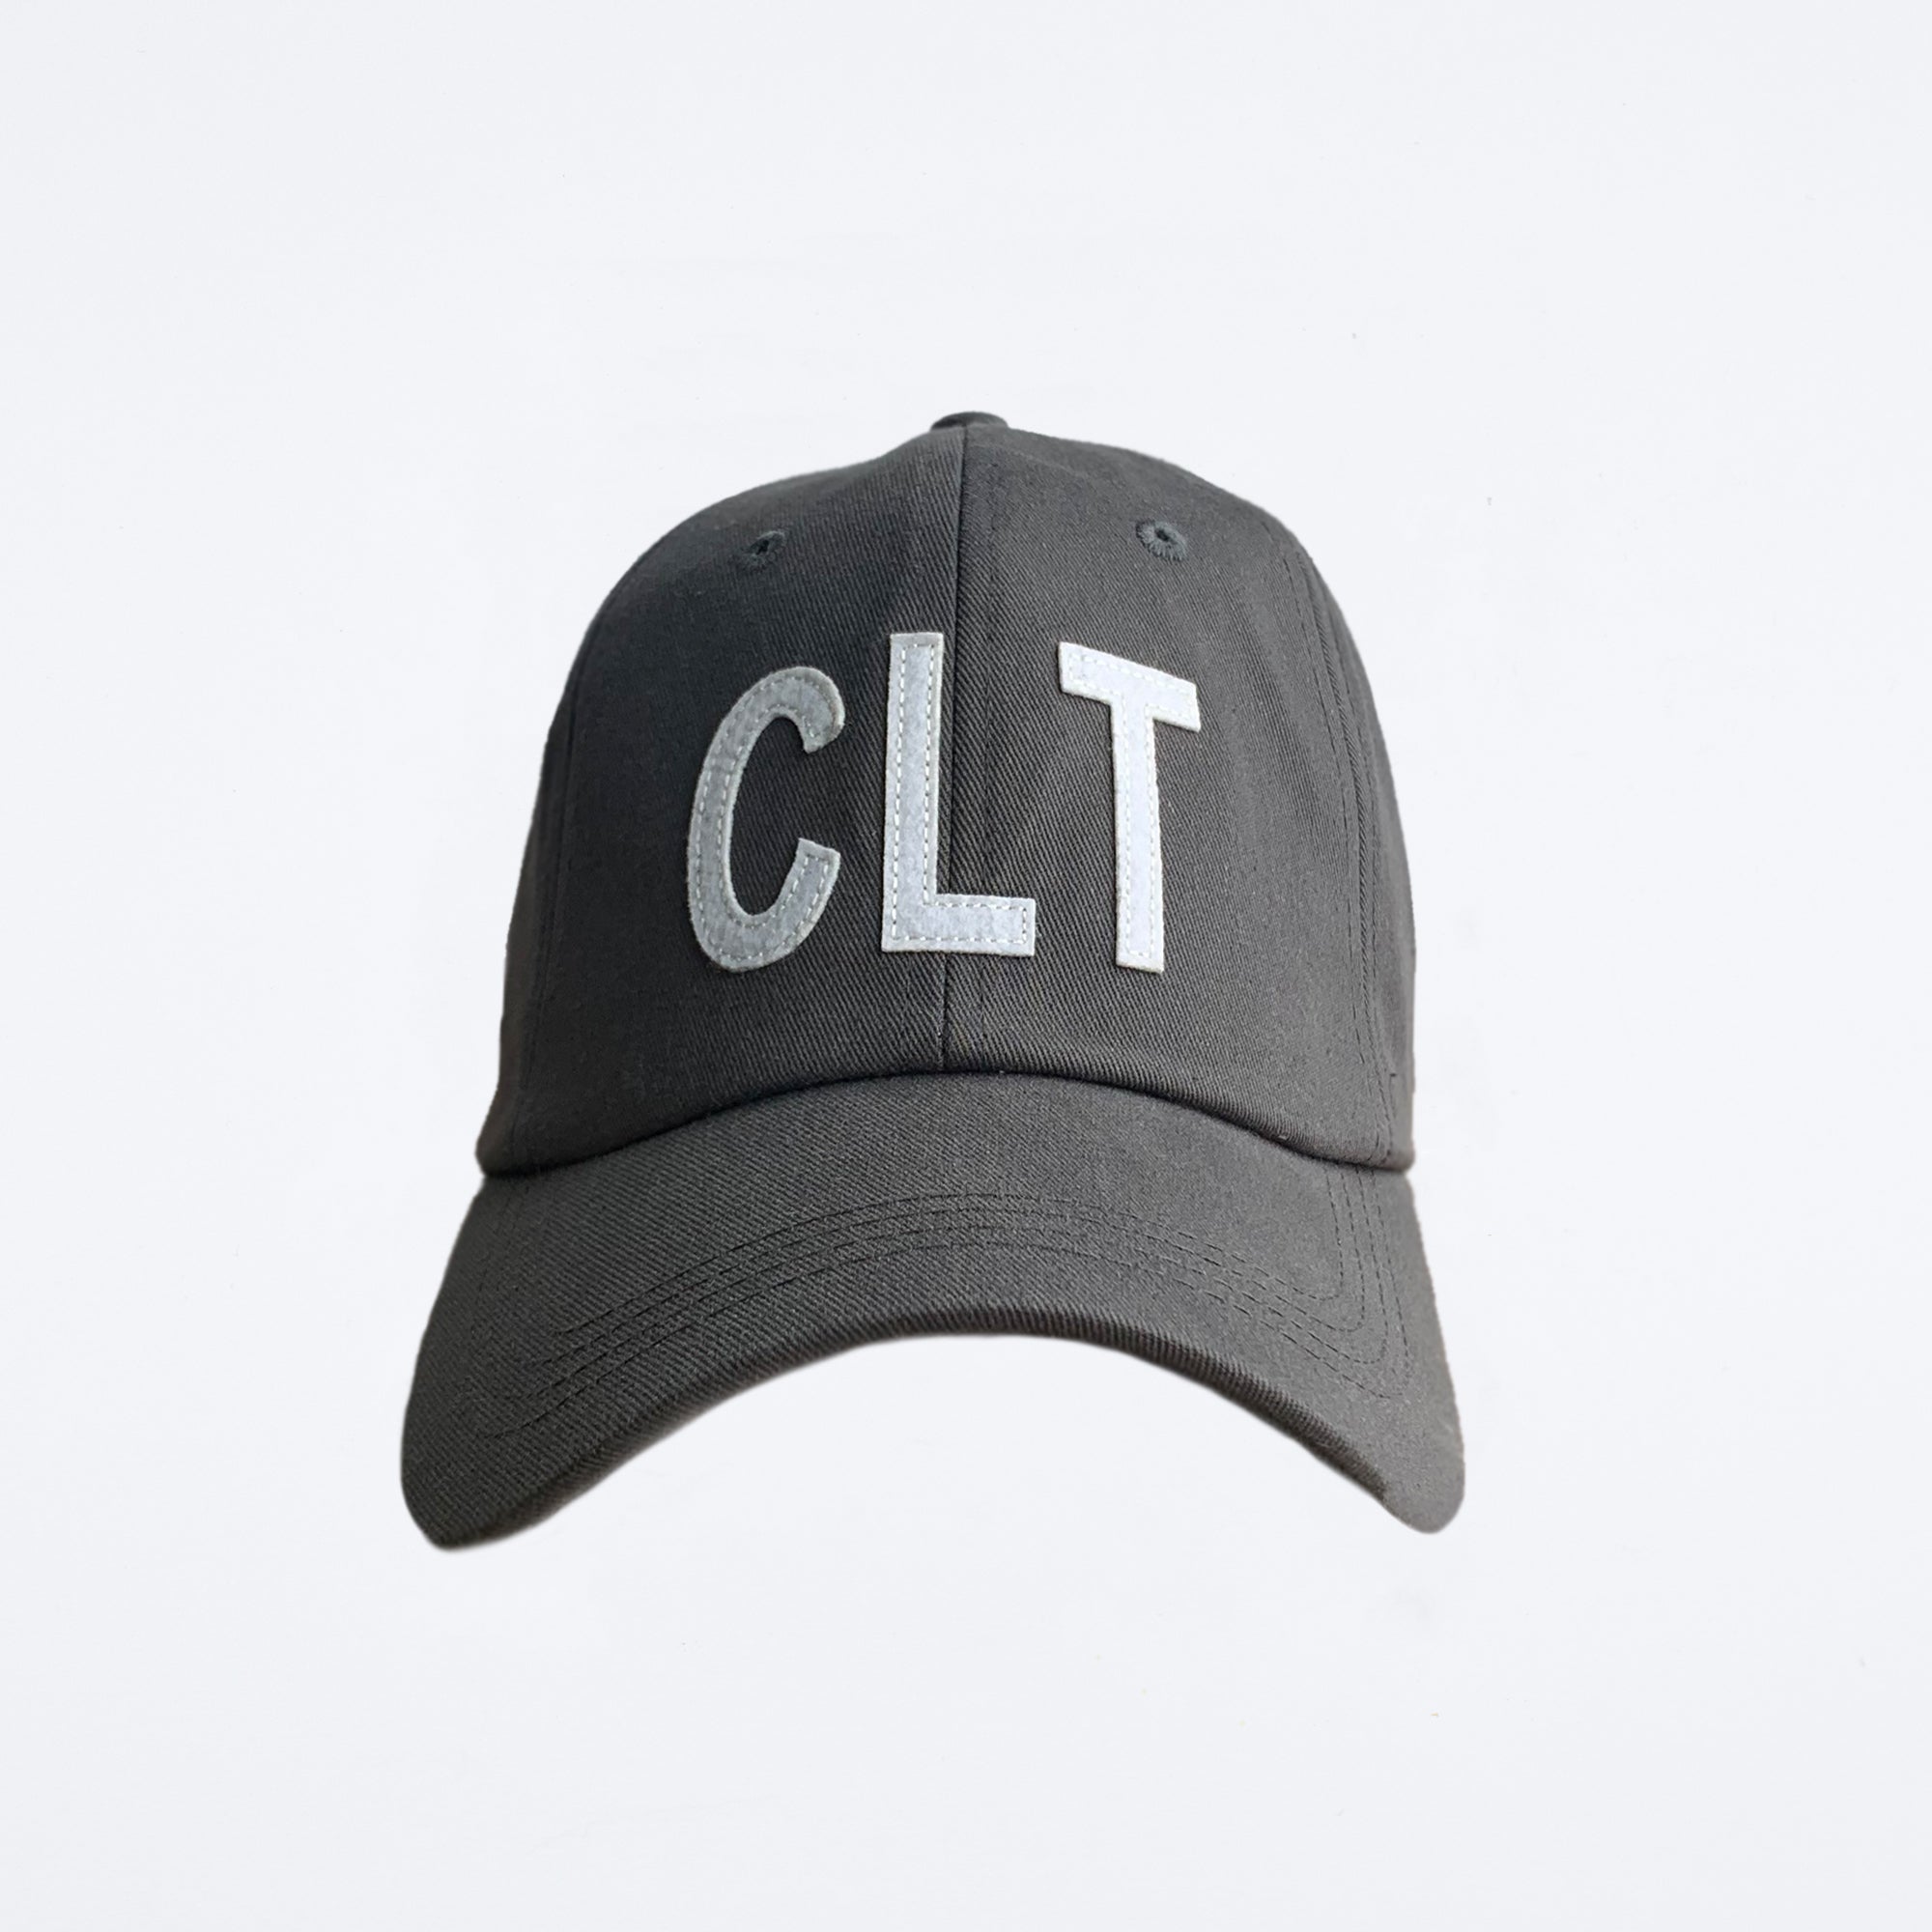 CLT Hat